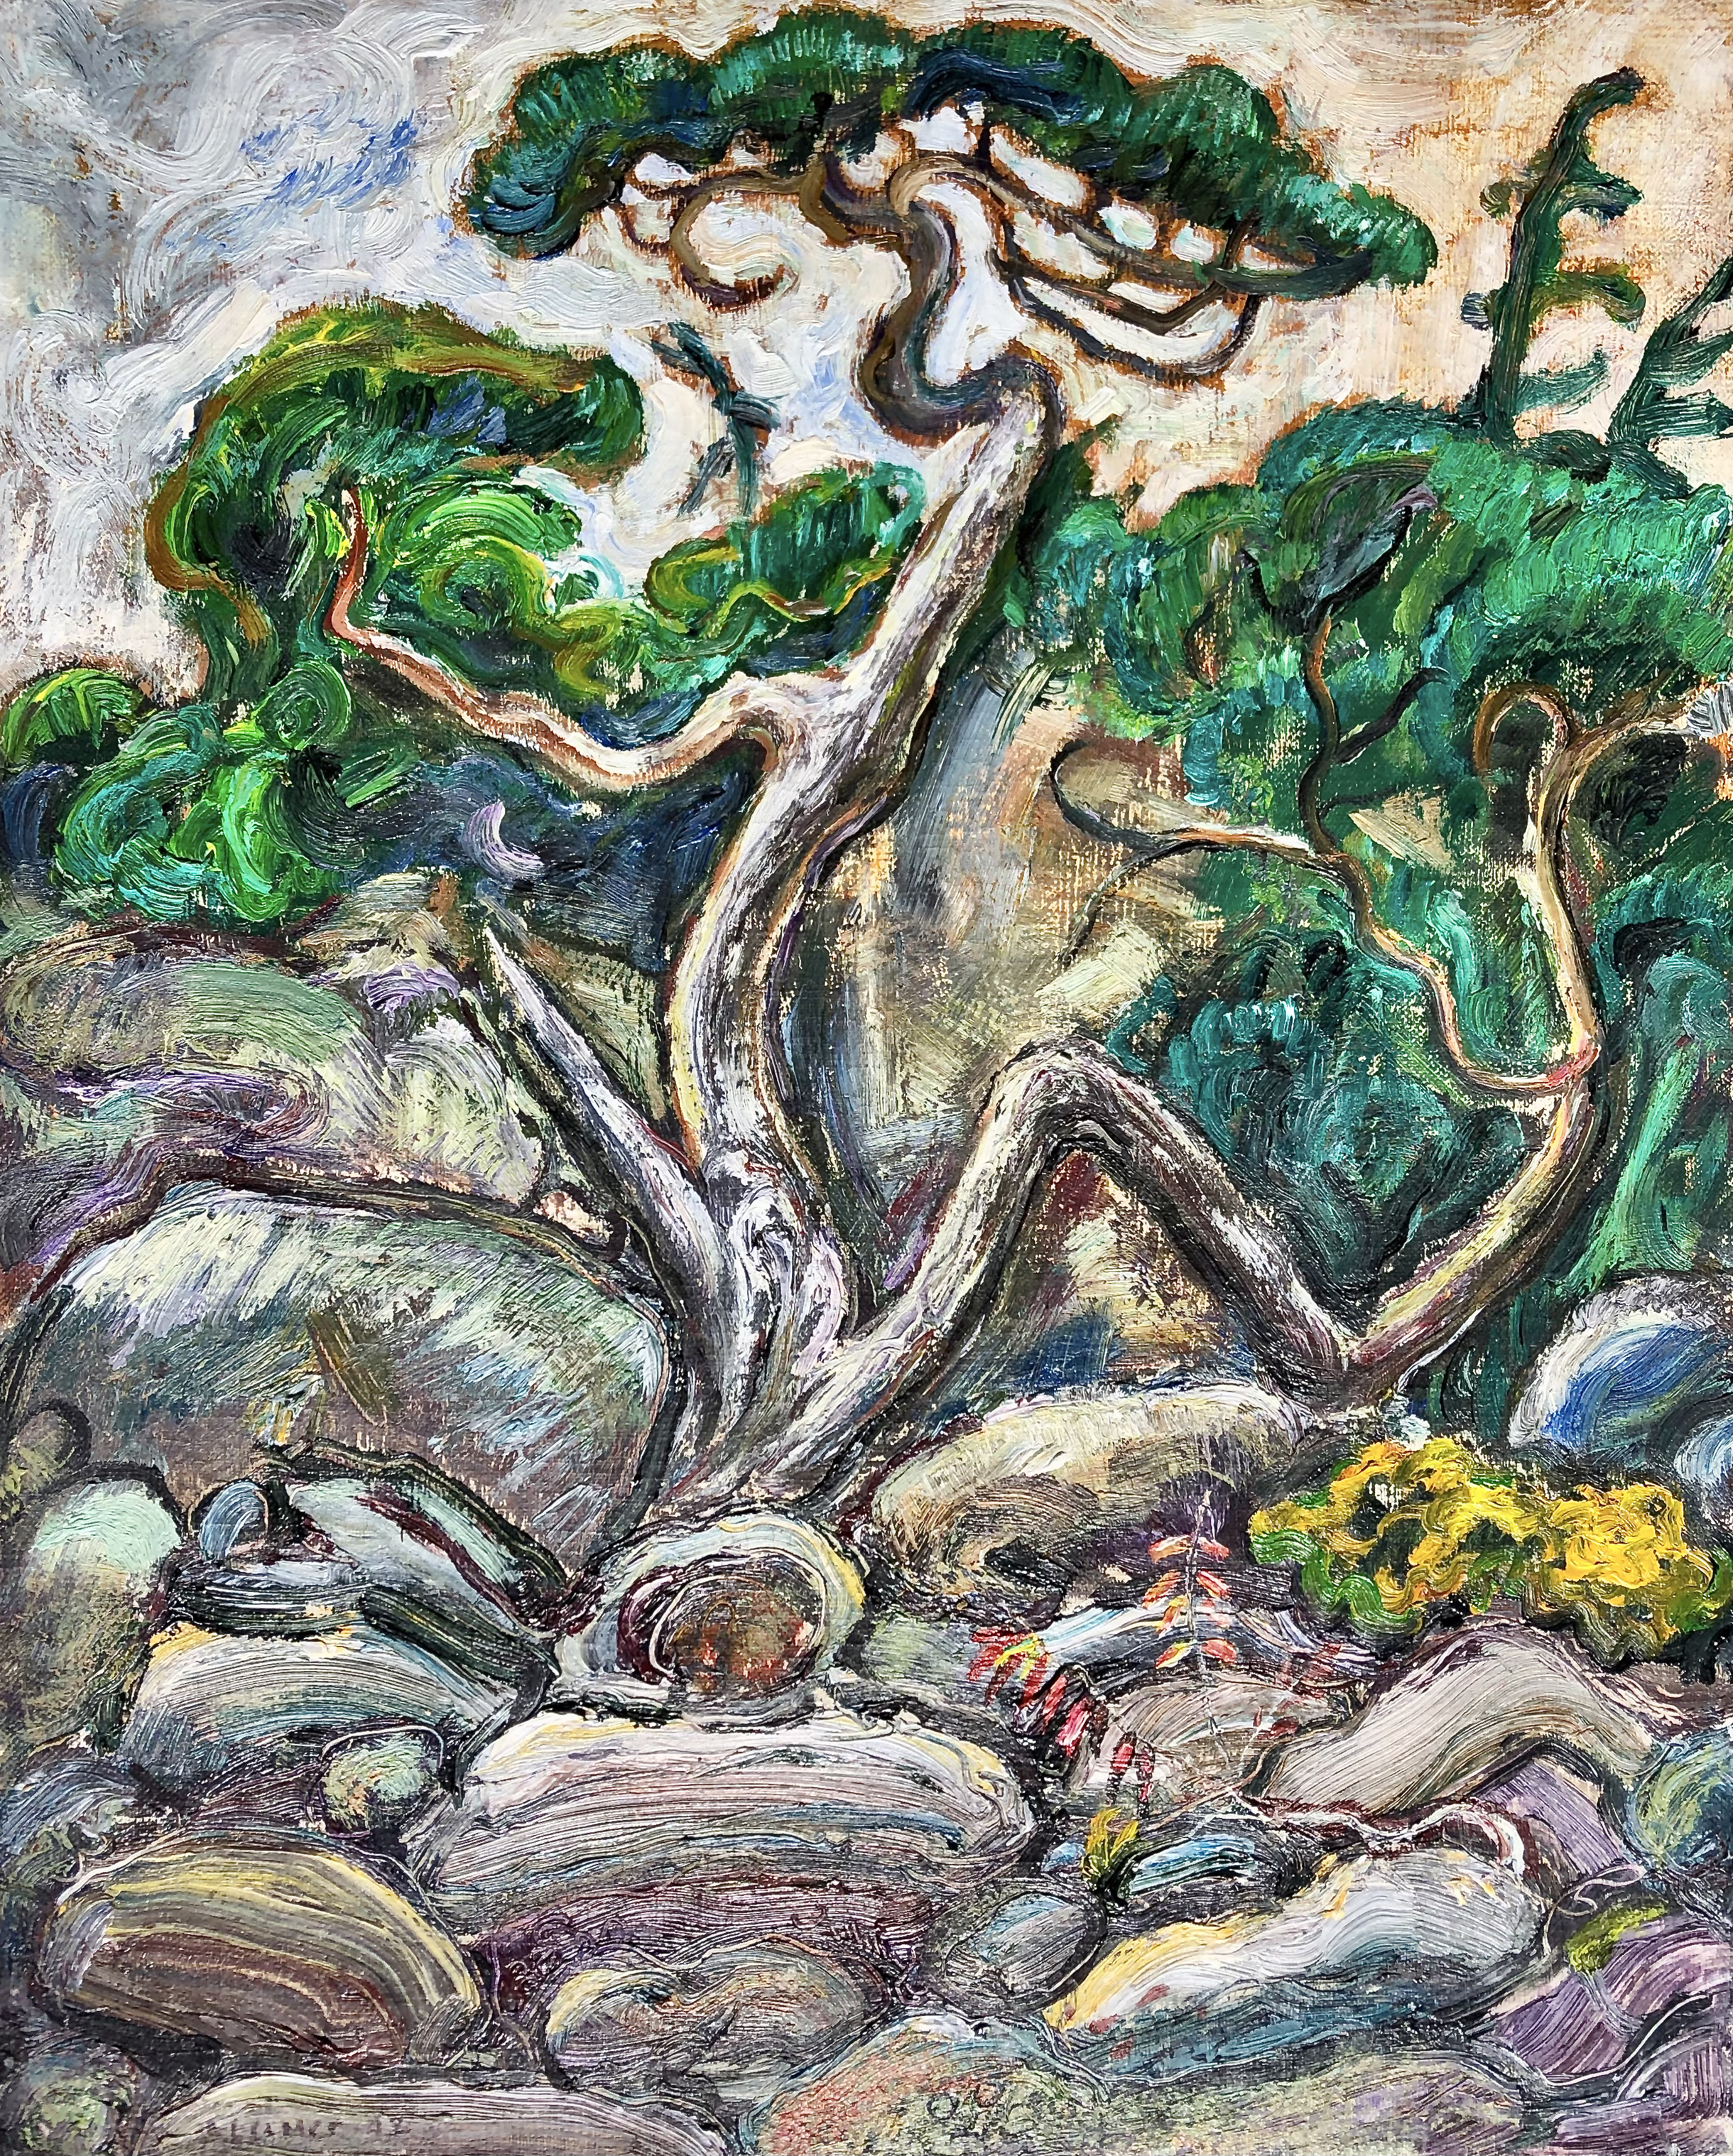 Twisted Pine Georgian Bay (1942) by Arthur Lismer